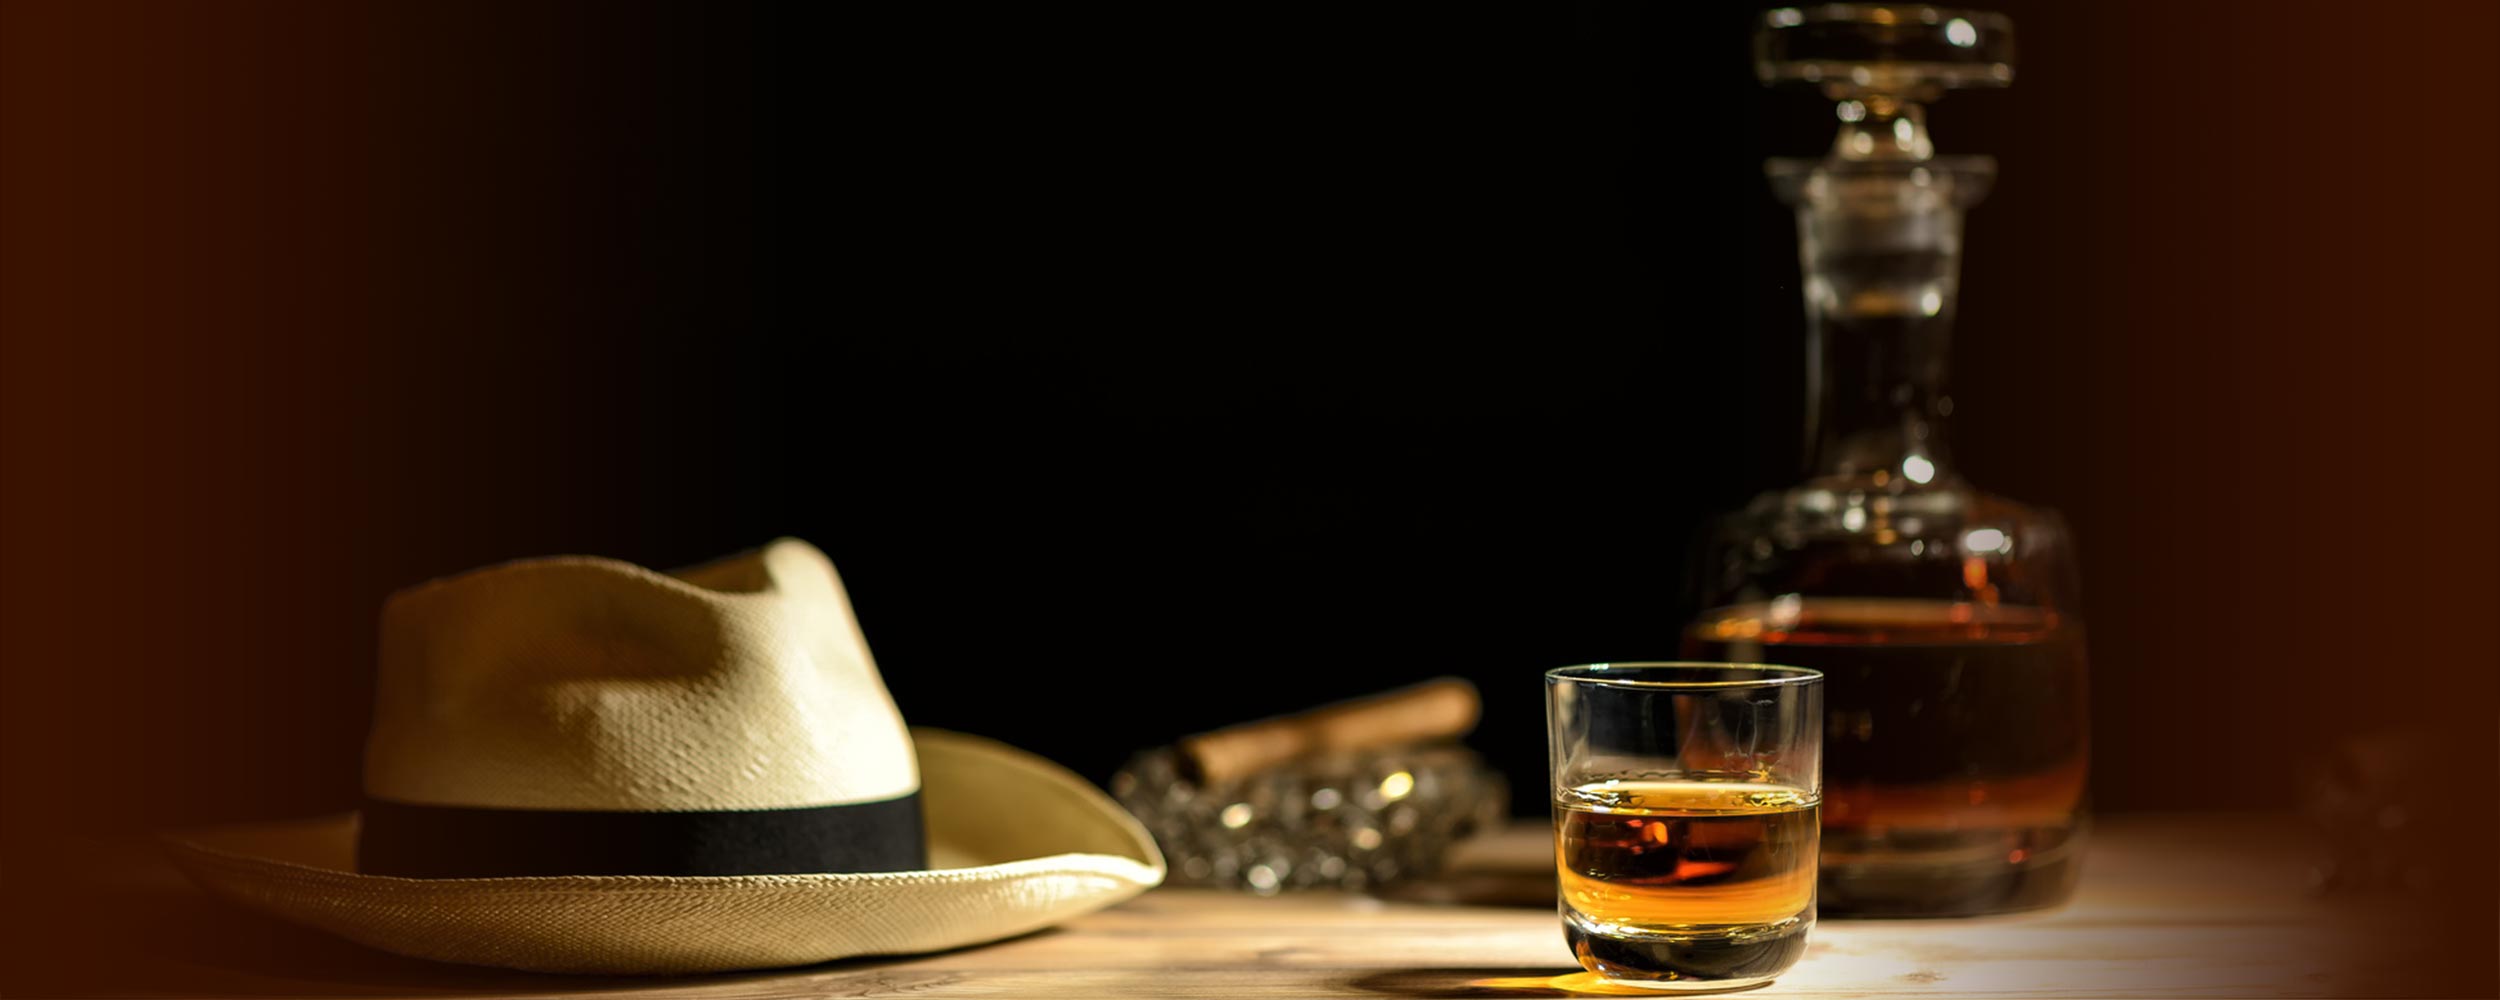 Rum Tasting - Premium Rum | Roland Schuchardt - Guter Geschmack verbindet in Sindelfingen